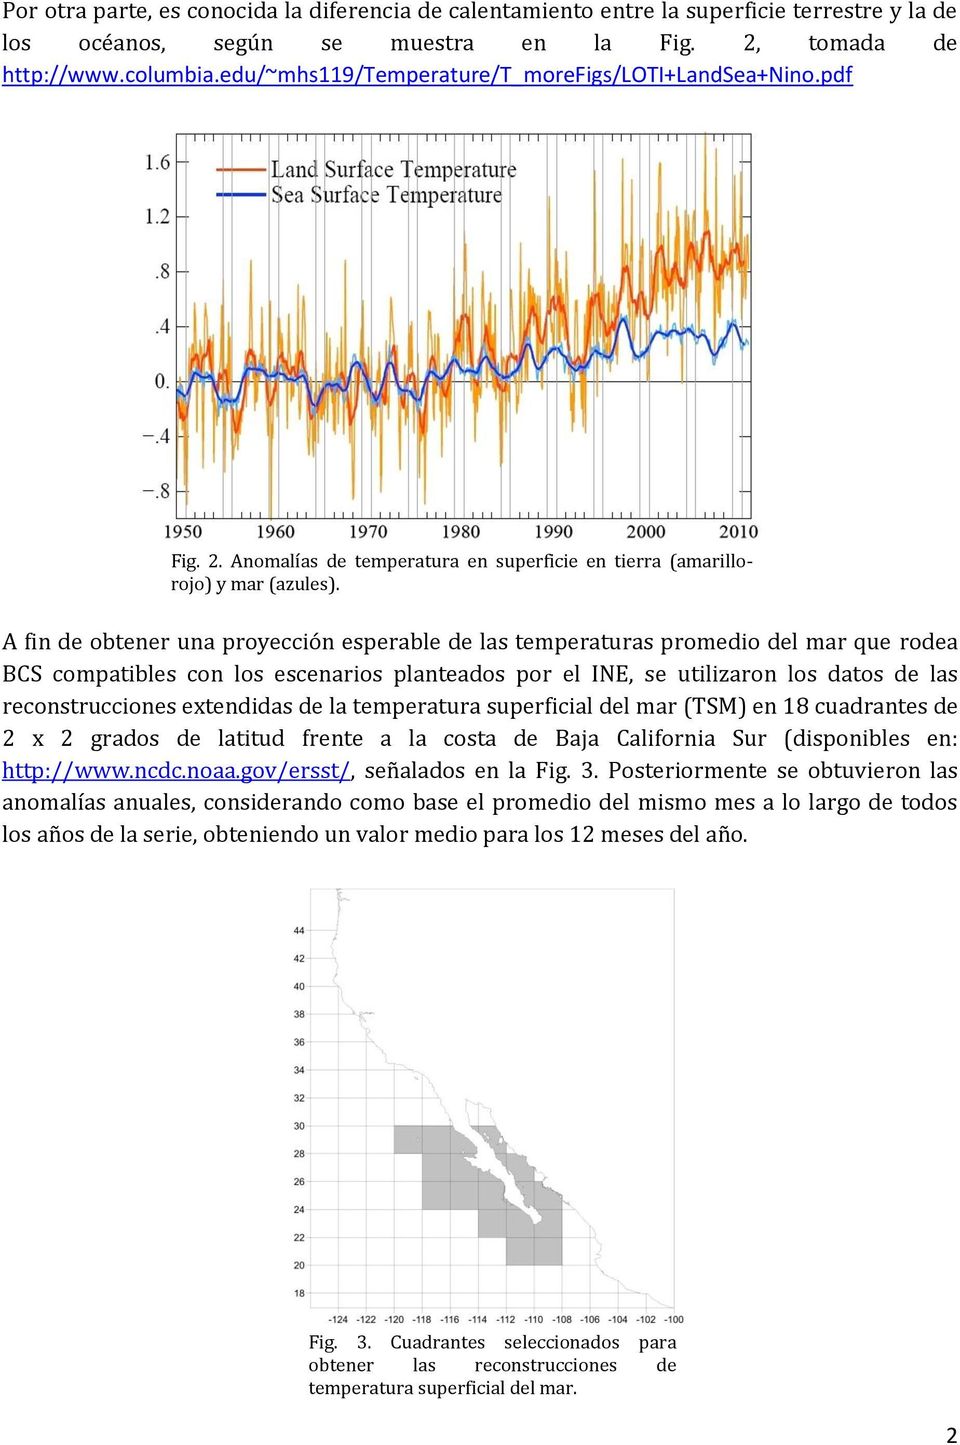 A fin de obtener una proyección esperable de las temperaturas promedio del mar que rodea BCS compatibles con los escenarios planteados por el INE, se utilizaron los datos de las reconstrucciones